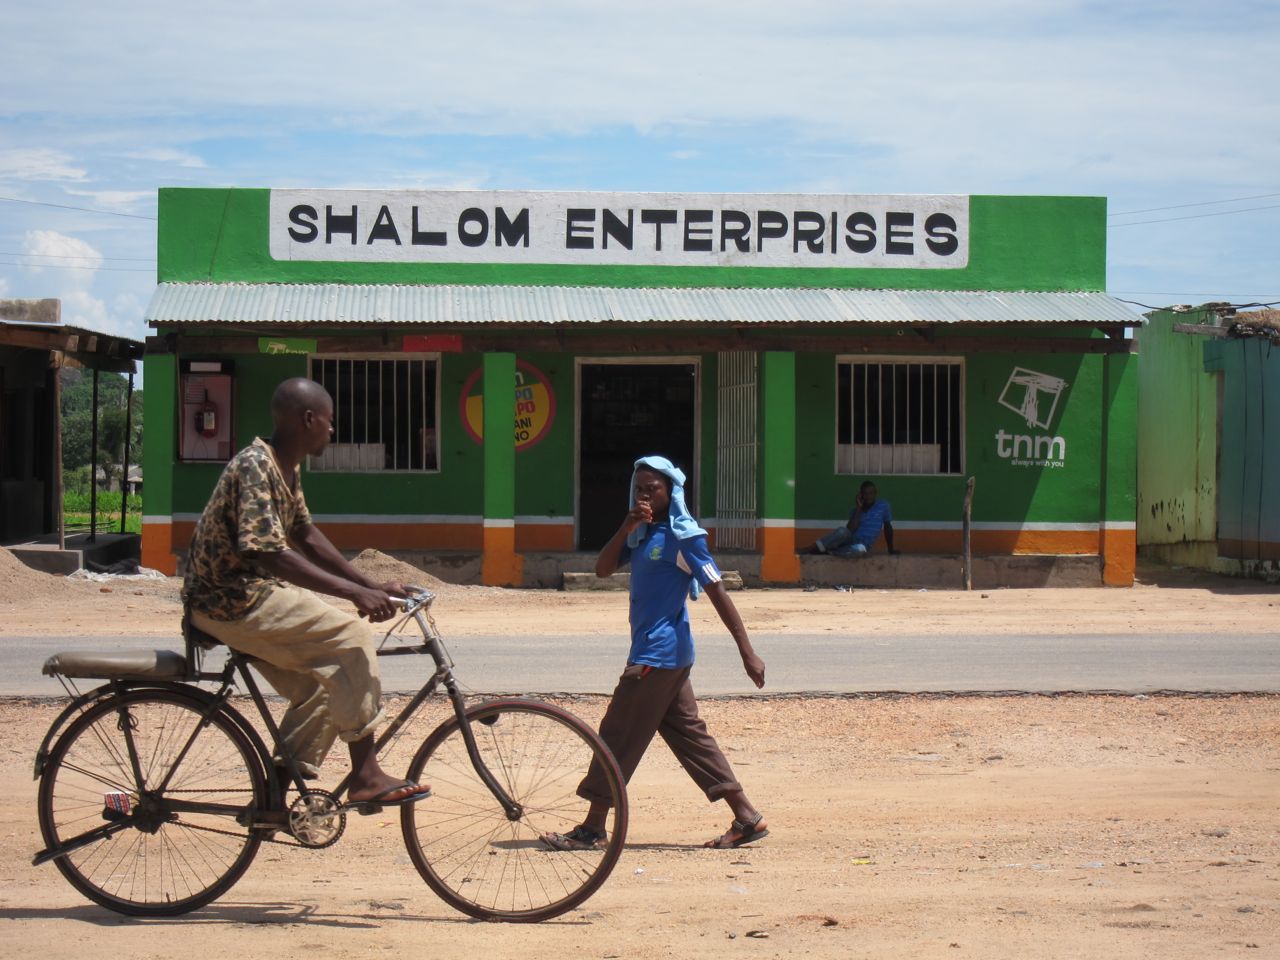 Shalom enterprises